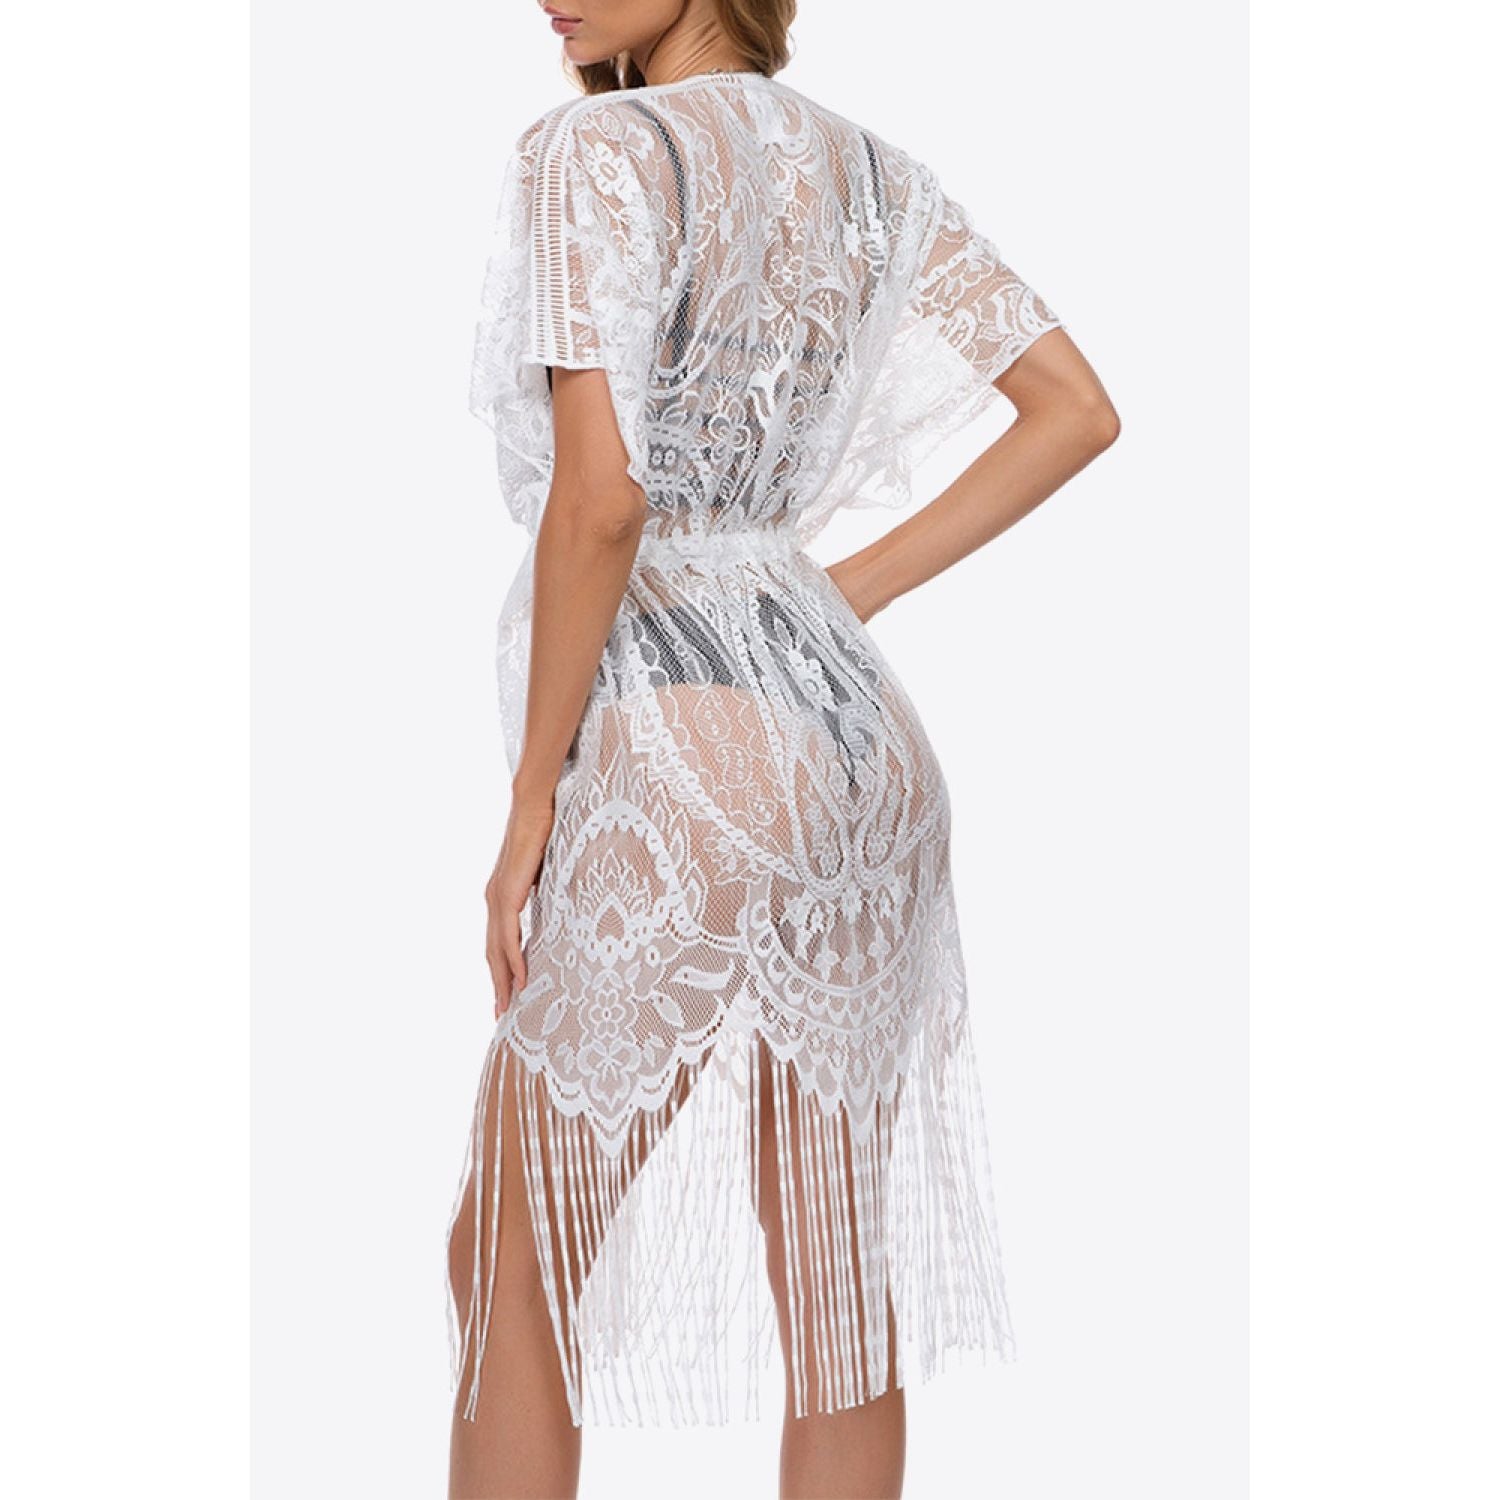 Fringe Trim Lace Cover-Up Dress - TiffanyzKlozet